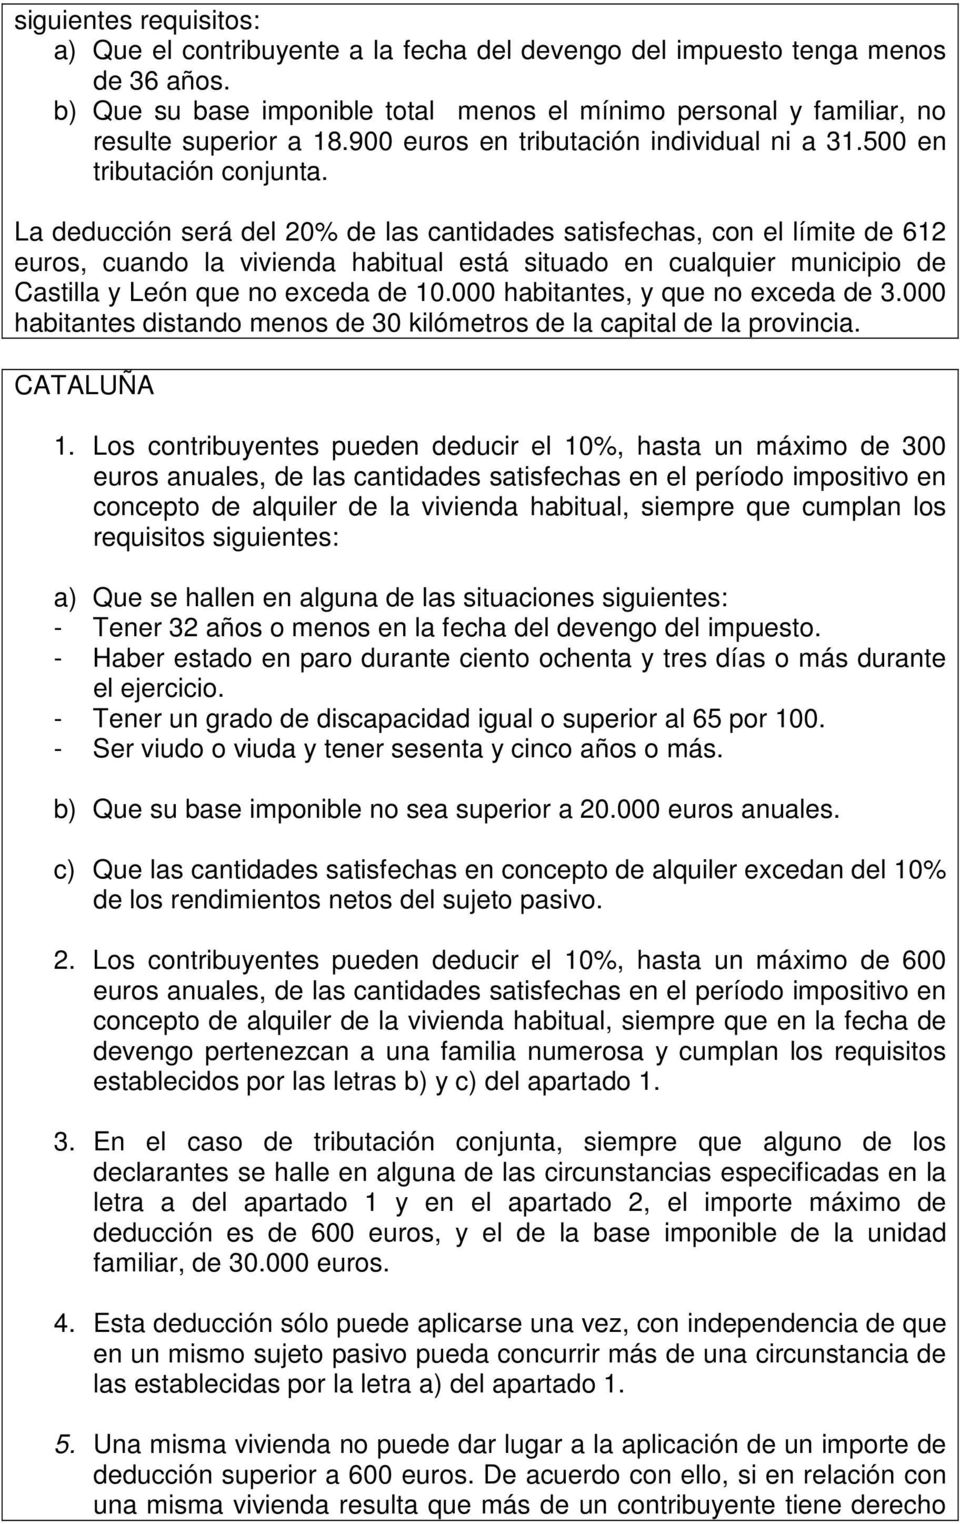 La deducción será del 20% de las cantidades satisfechas, con el límite de 612 euros, cuando la vivienda habitual está situado en cualquier municipio de Castilla y León que no exceda de 10.